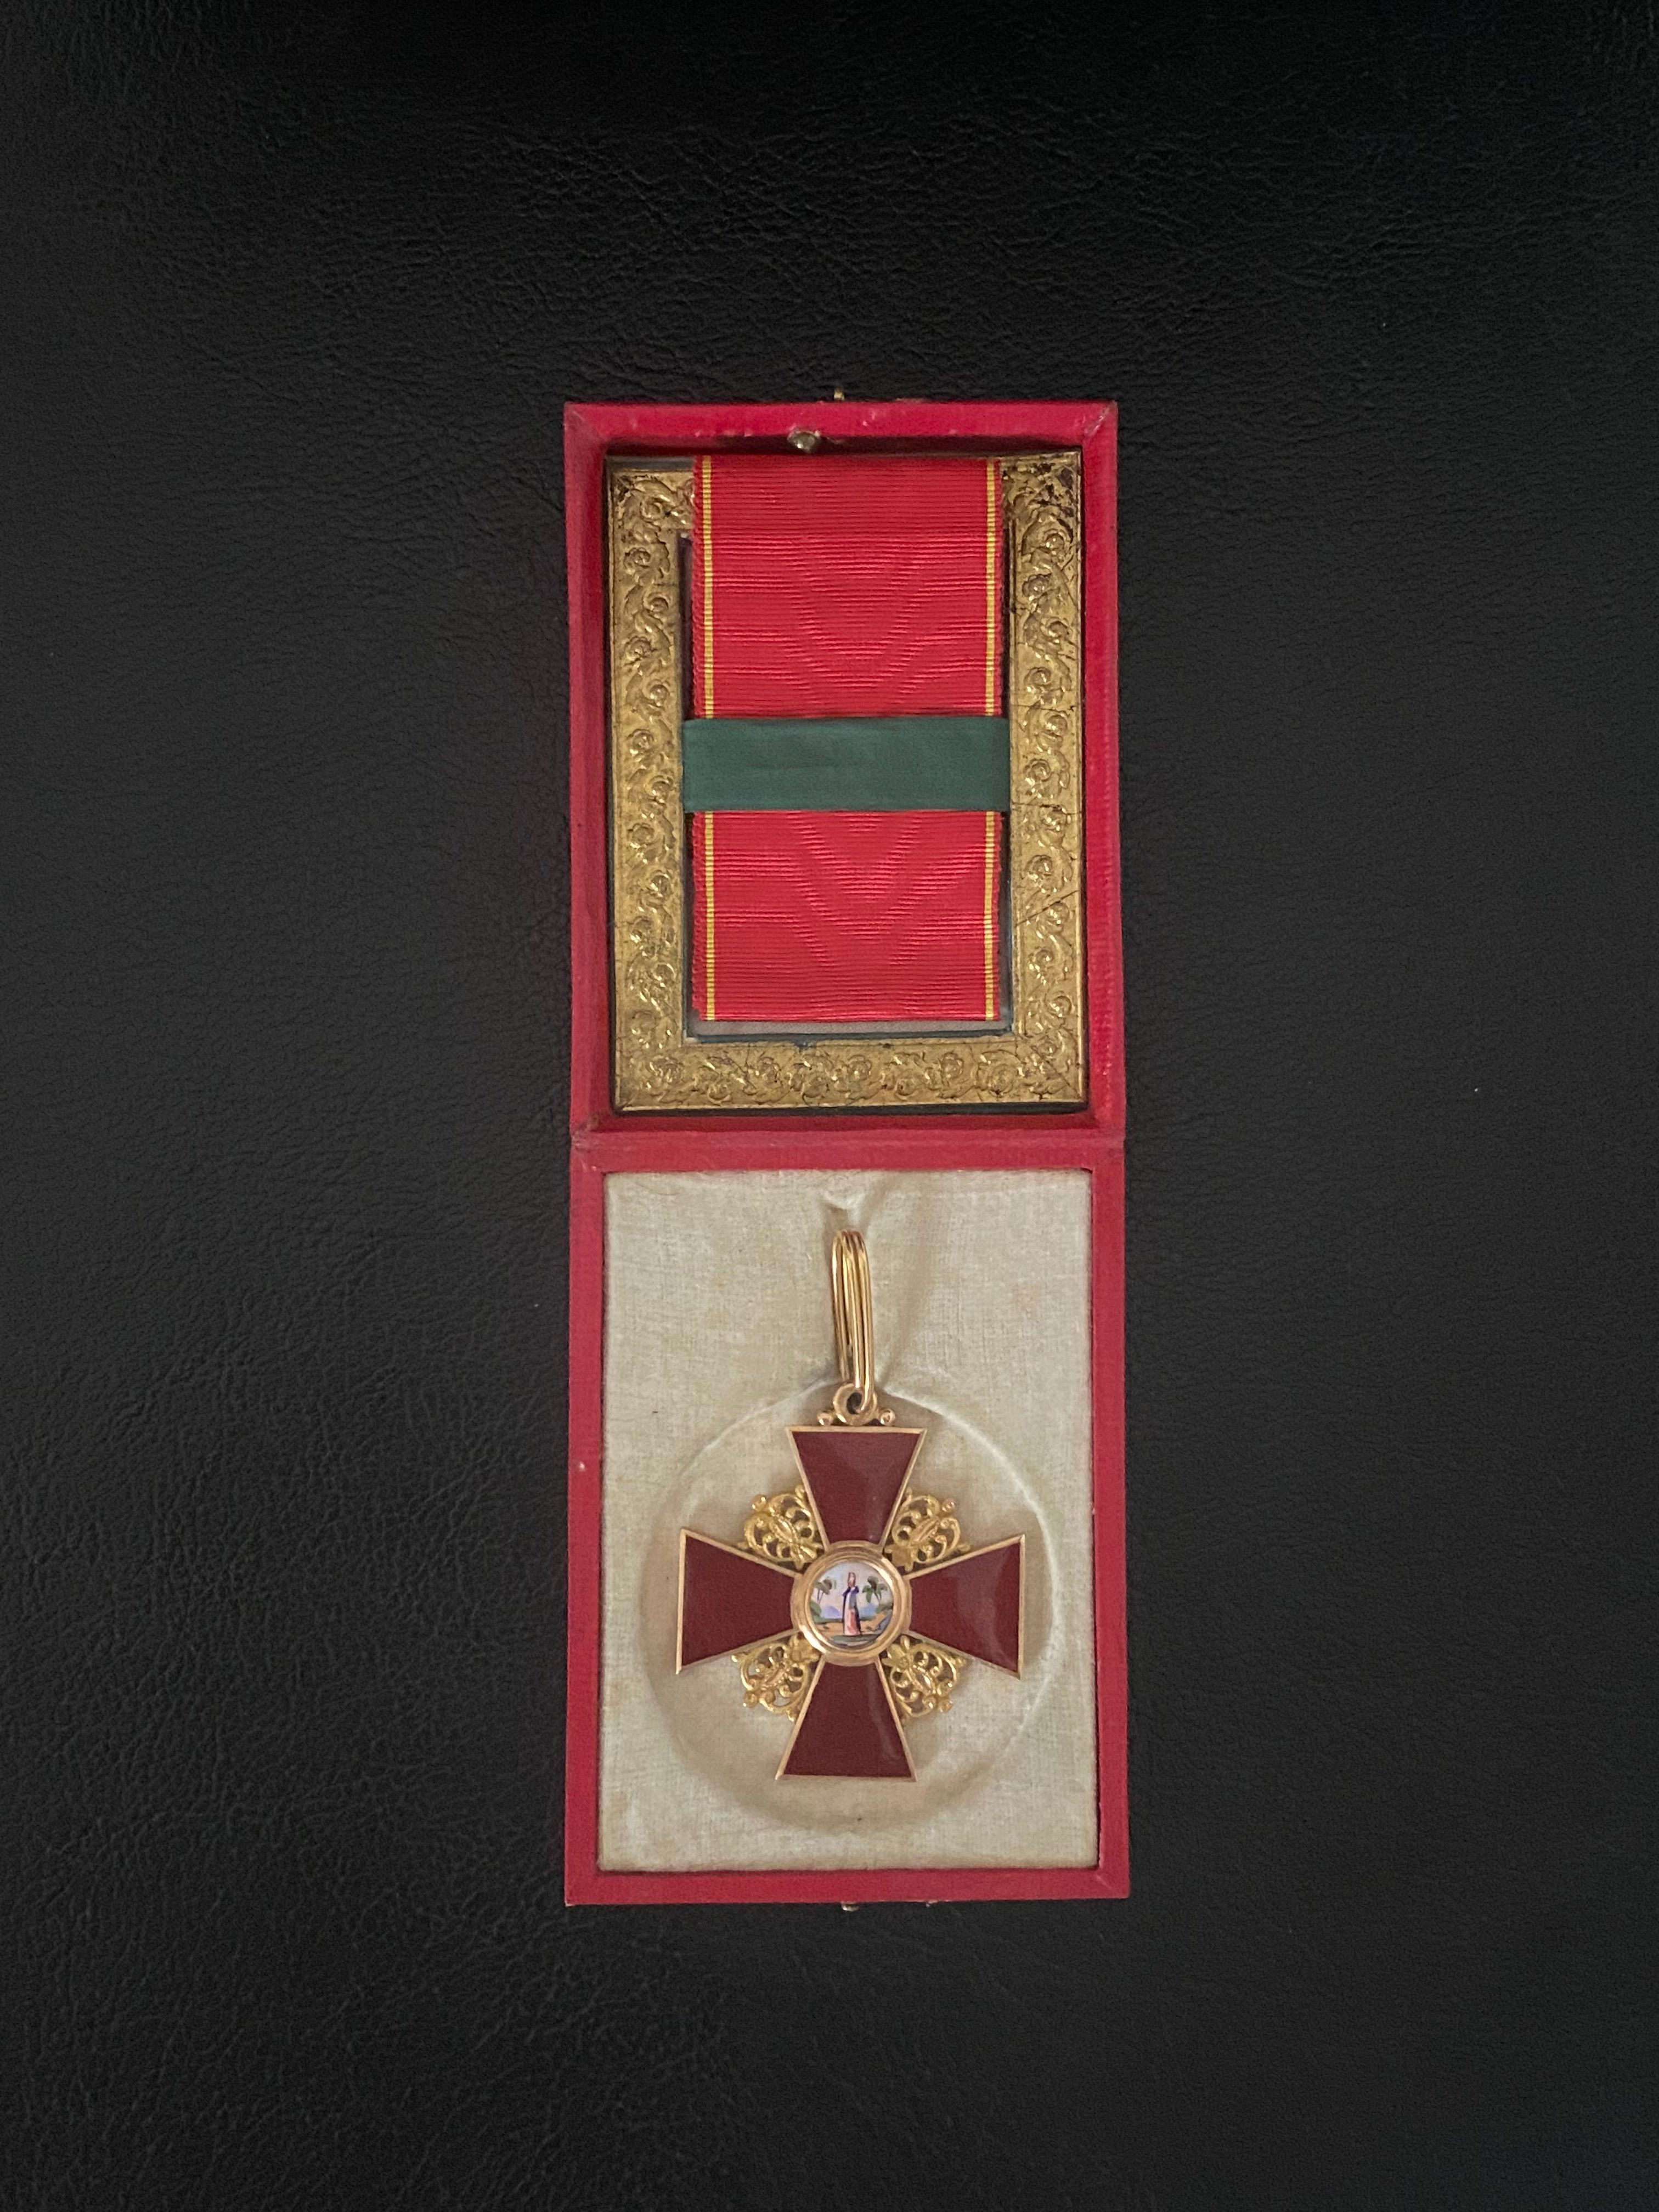 Ordre de Sainte Anne, Russie, 2ème classe